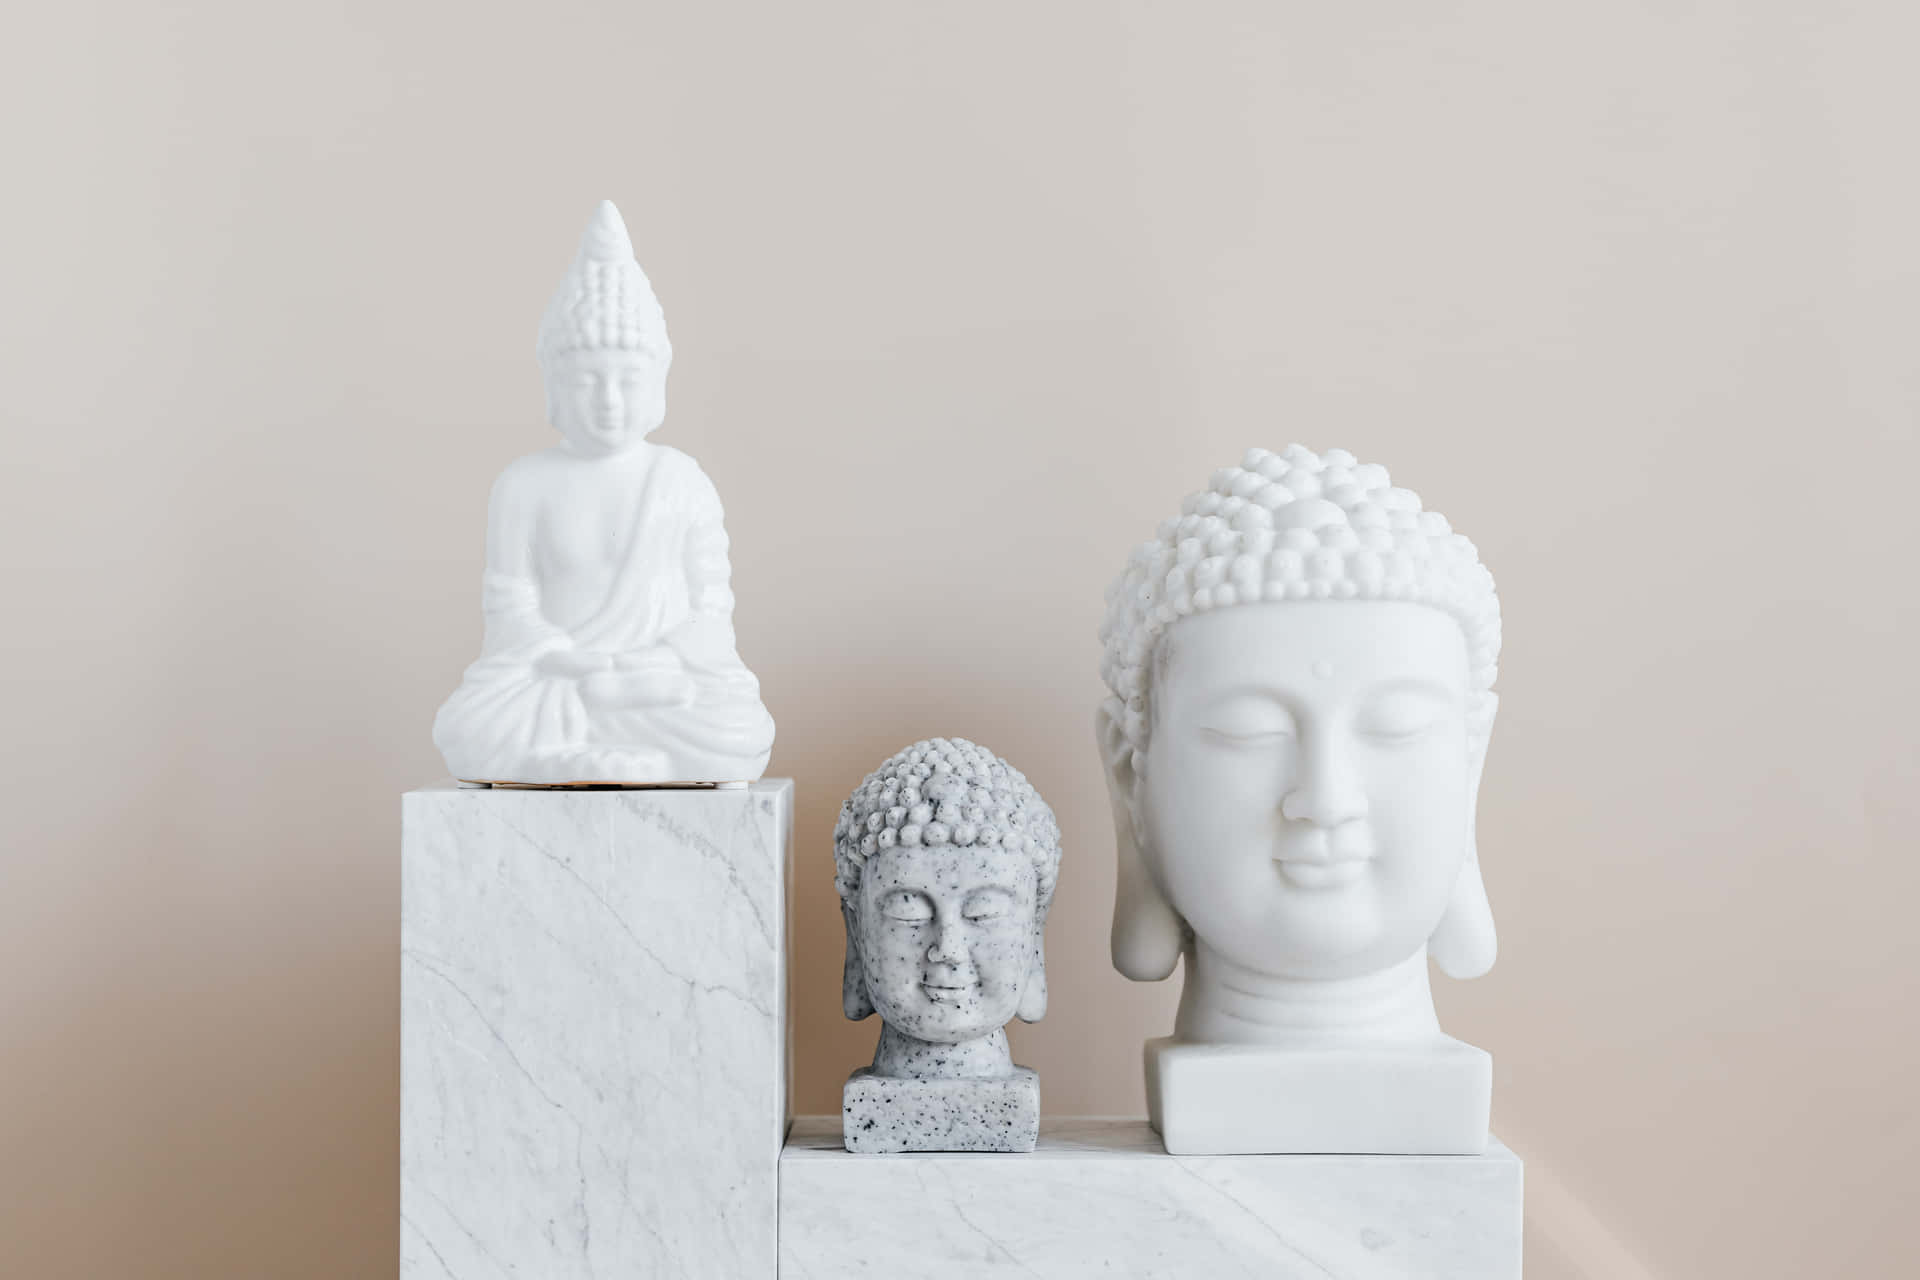 Imagende Esculturas Budistas Blancas